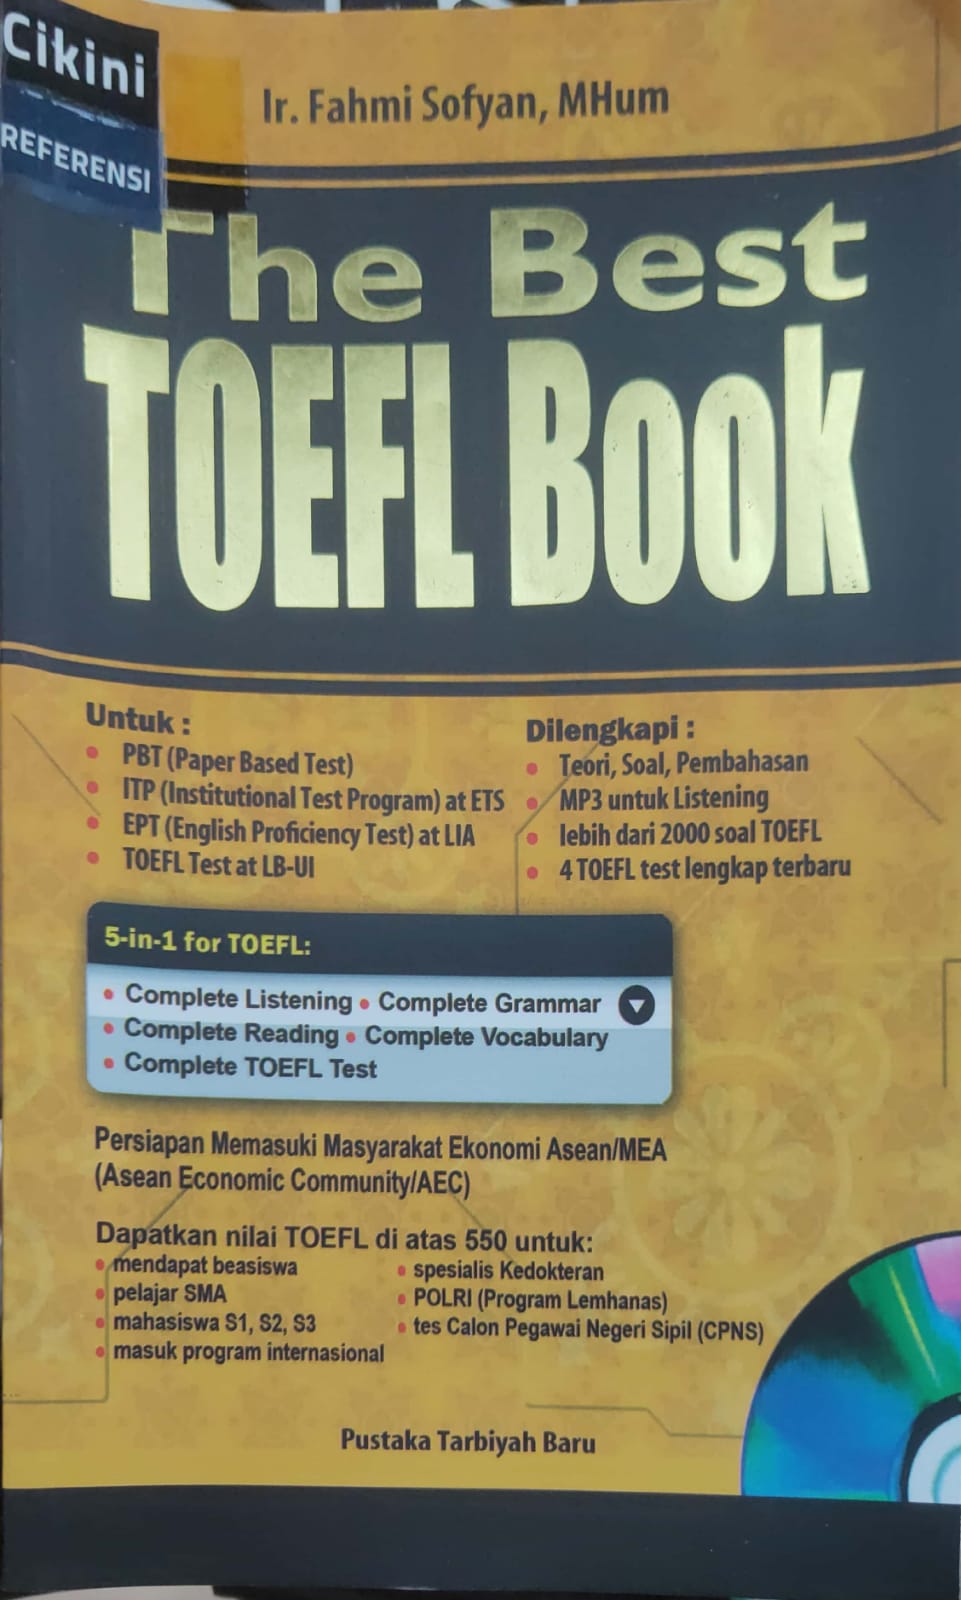 The best toefl book